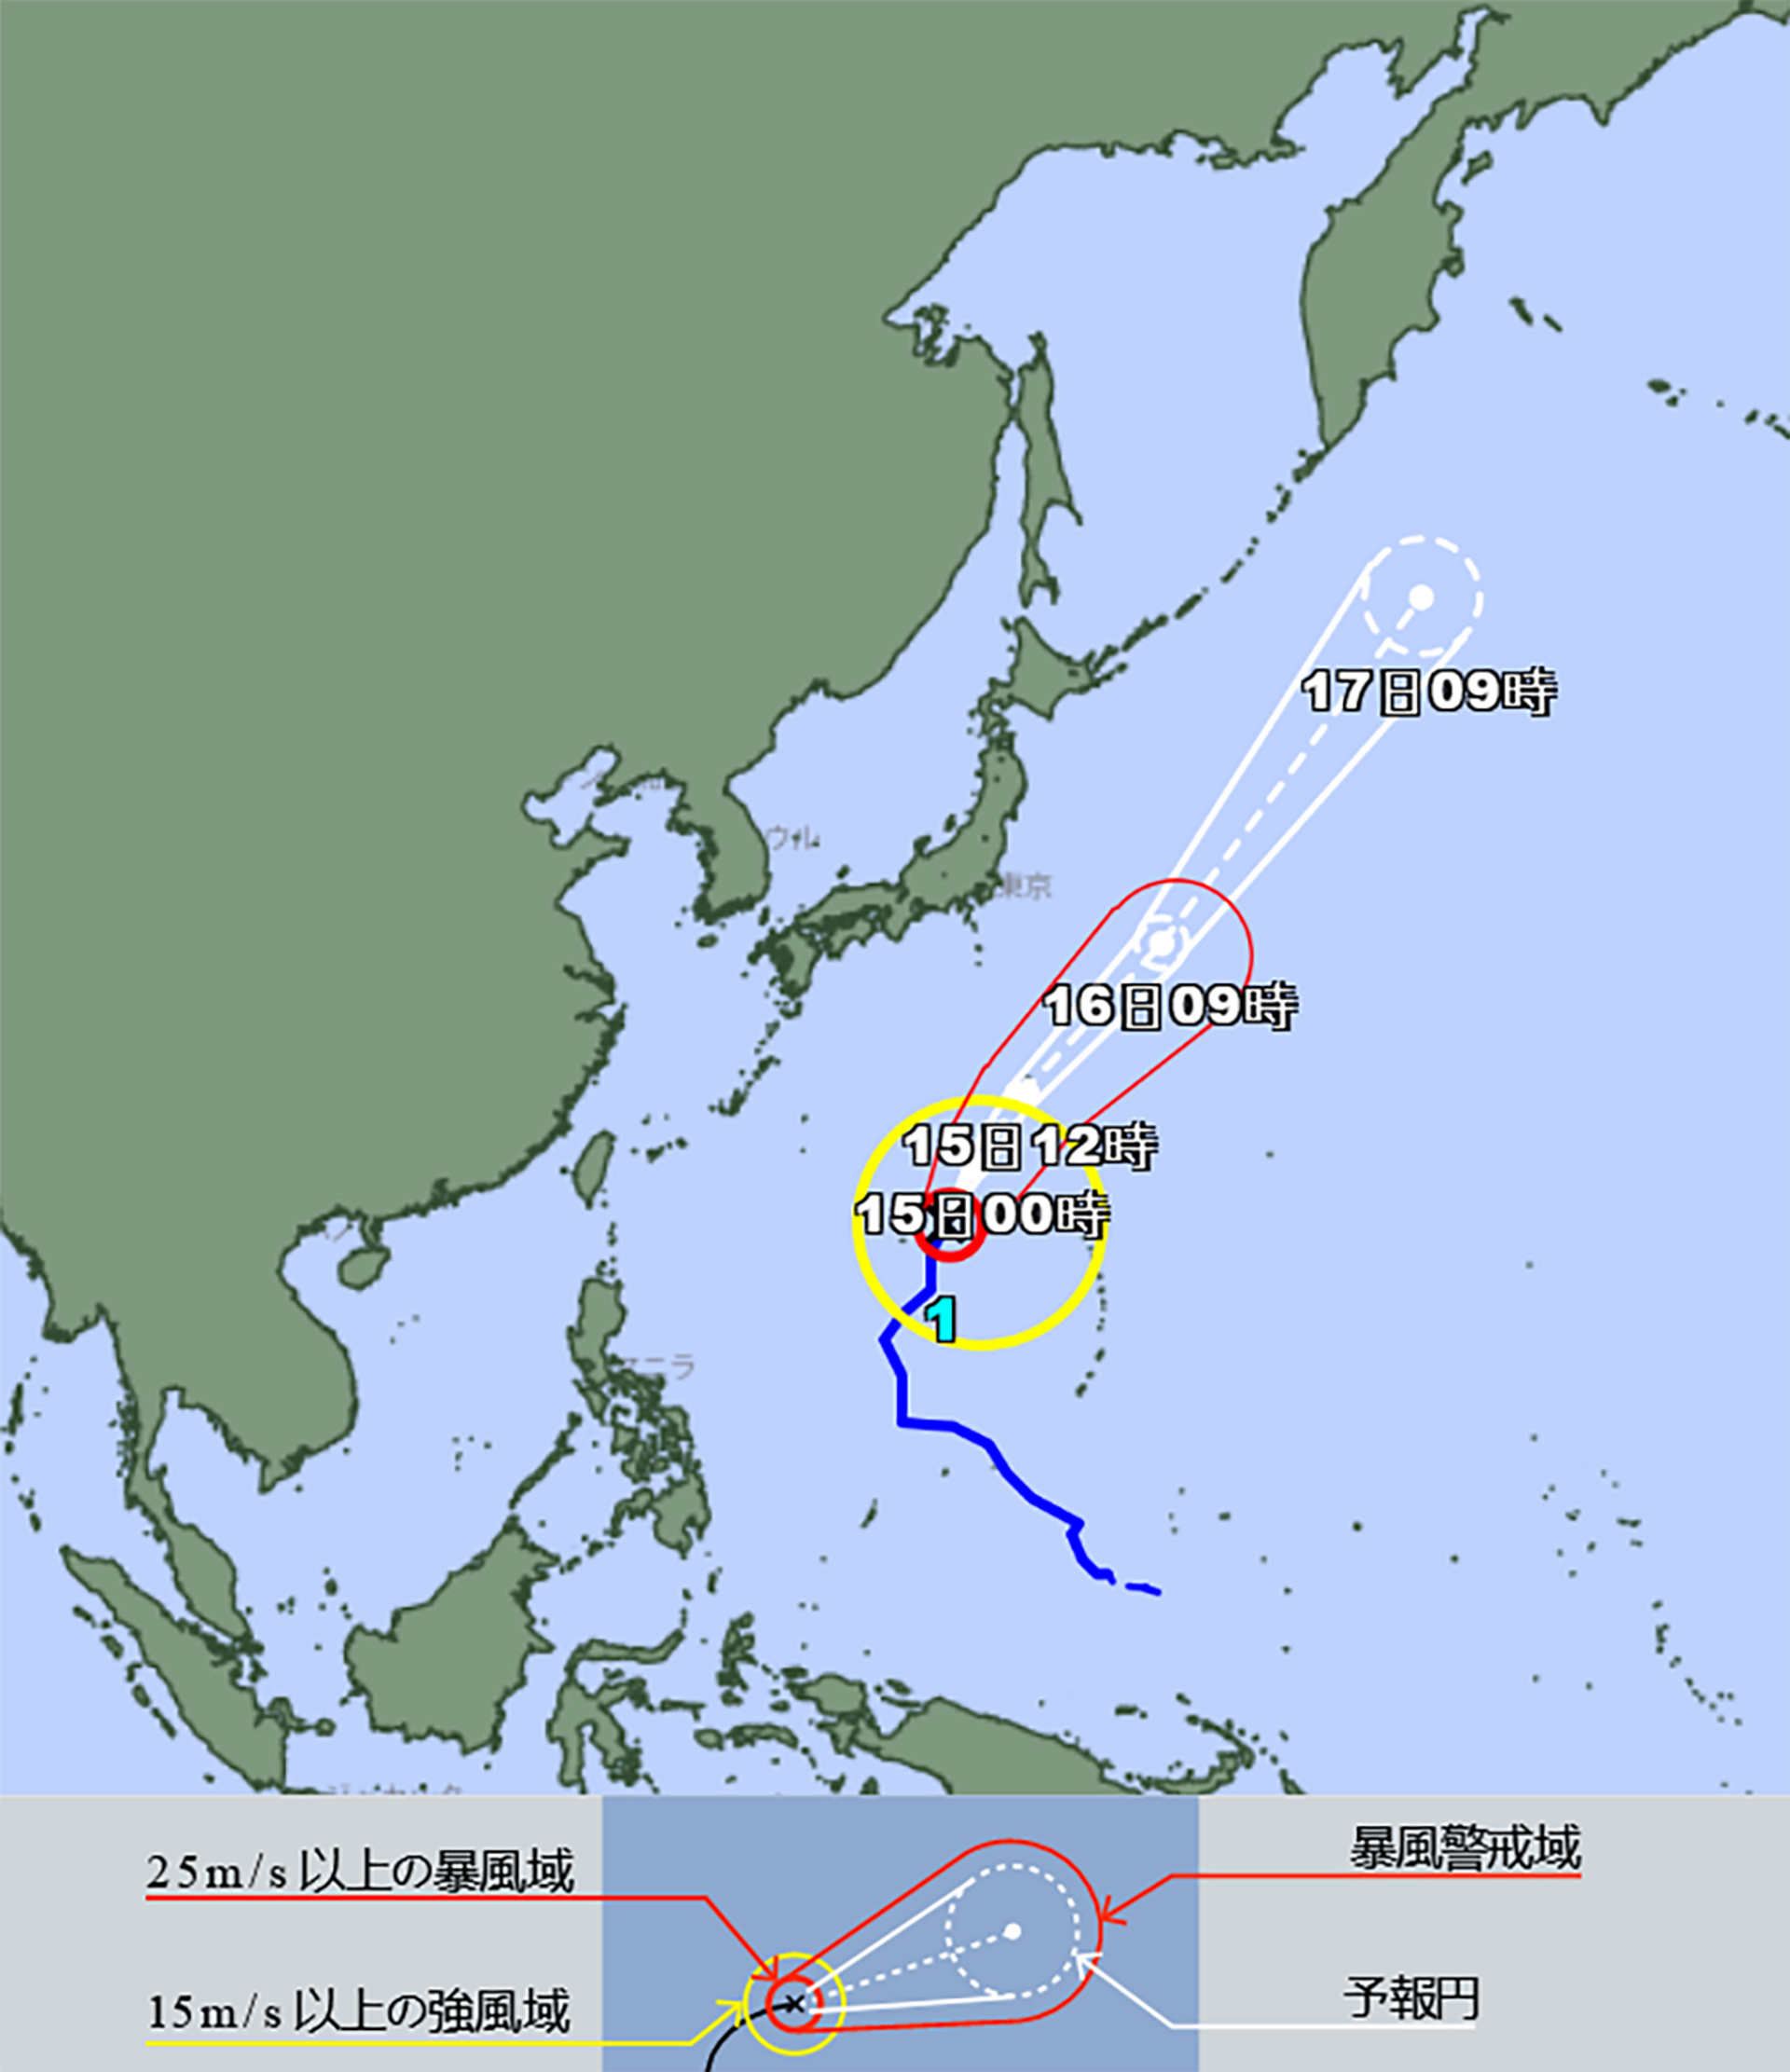 Карта надвигающегося тайфуна на Японию  - Sputnik 日本, 1920, 14.04.2022